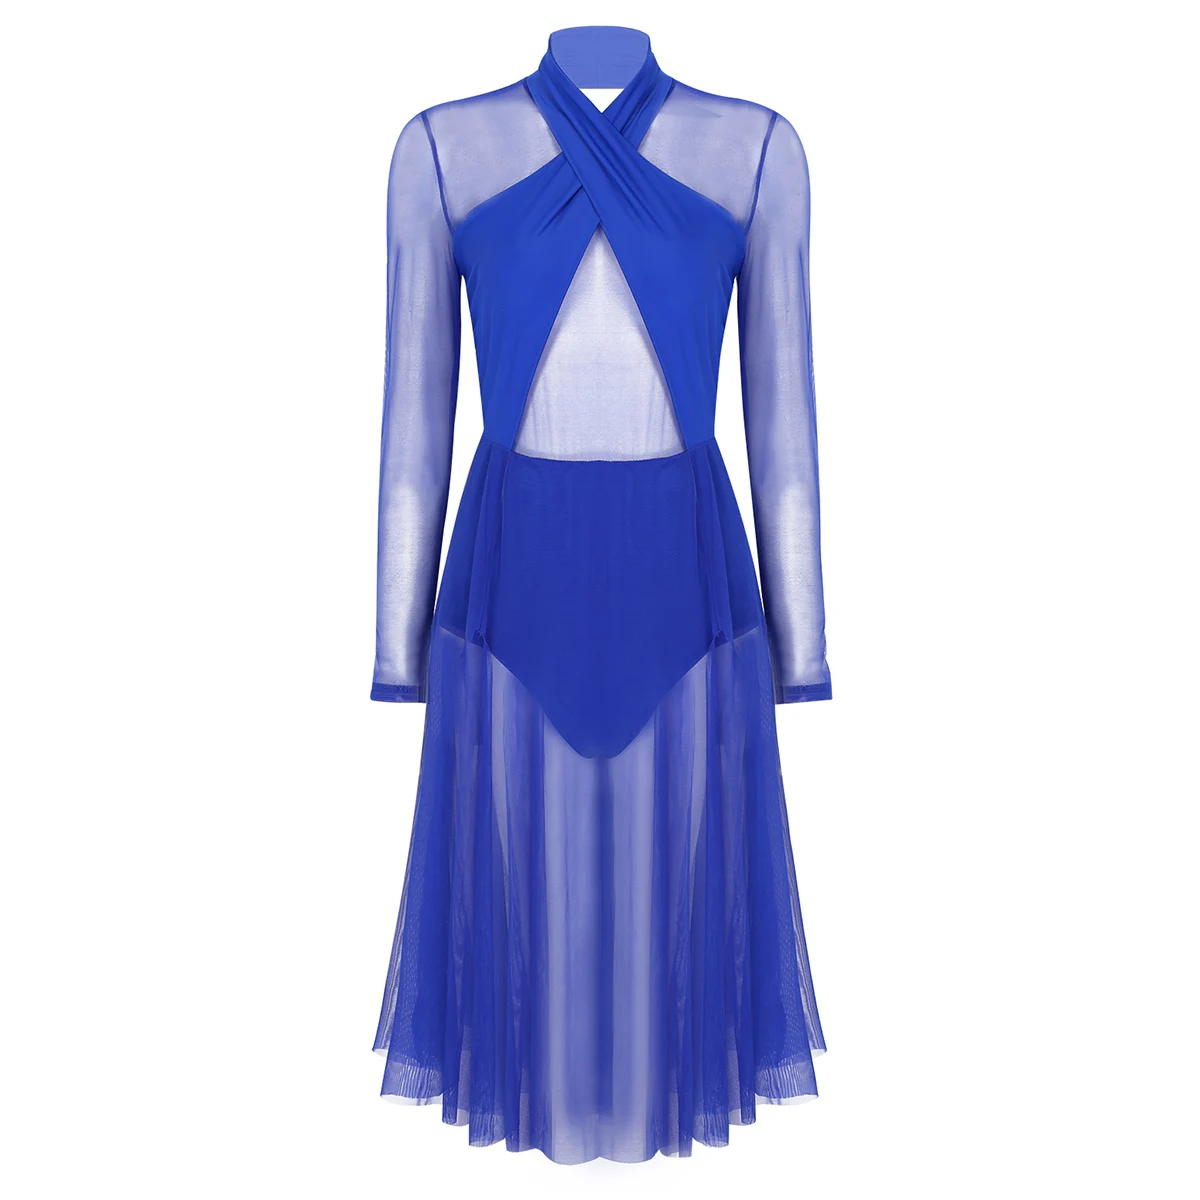 Женская Современная лирическая танцевальная одежда, профессиональное балетное танцевальное платье, тренировочный костюм с длинным рукавом, прозрачные гимнастические купальники - Цвет: Royal Blue